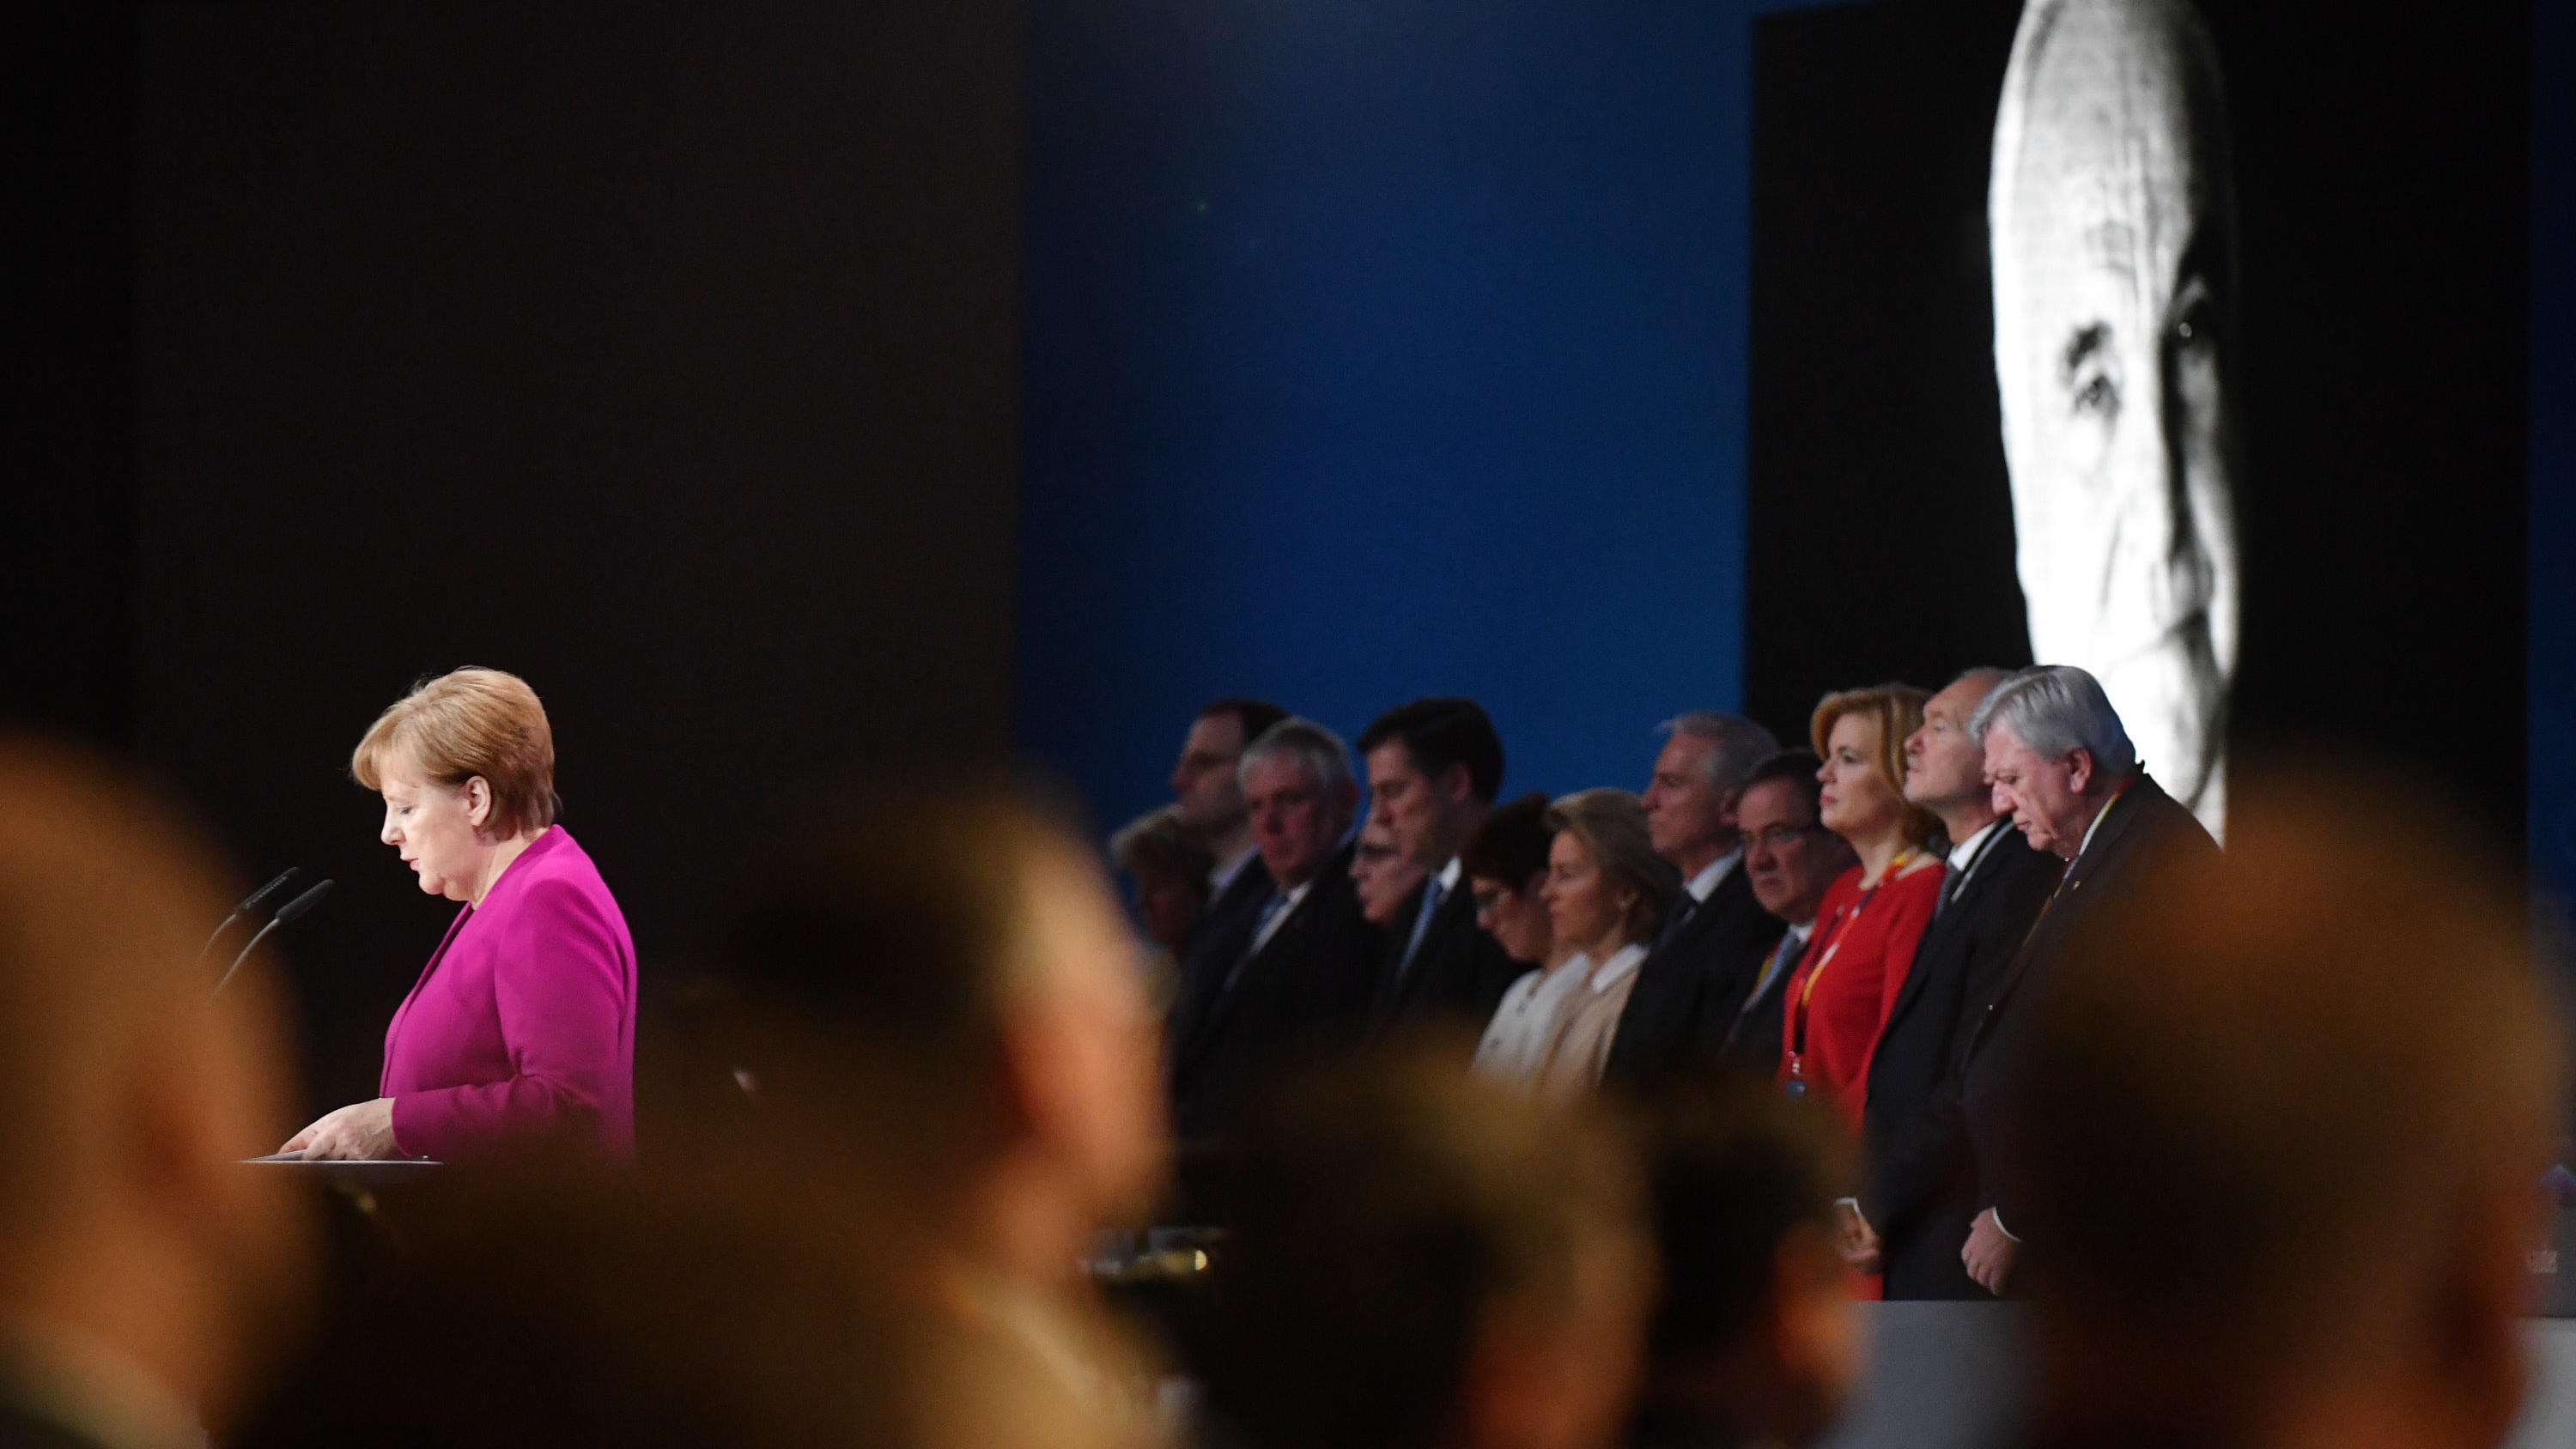 26.02.2018, Berlin: Bundeskanzlerin Angela Merkel (CDU) am Rednerpult während des Gedenkens an den verstorbenen ehemaligen Bundeskanzler Helmut Kohl (r) beim 30. Parteitag der Christlich Demokratischen Union Deutschlands (CDU). Fot